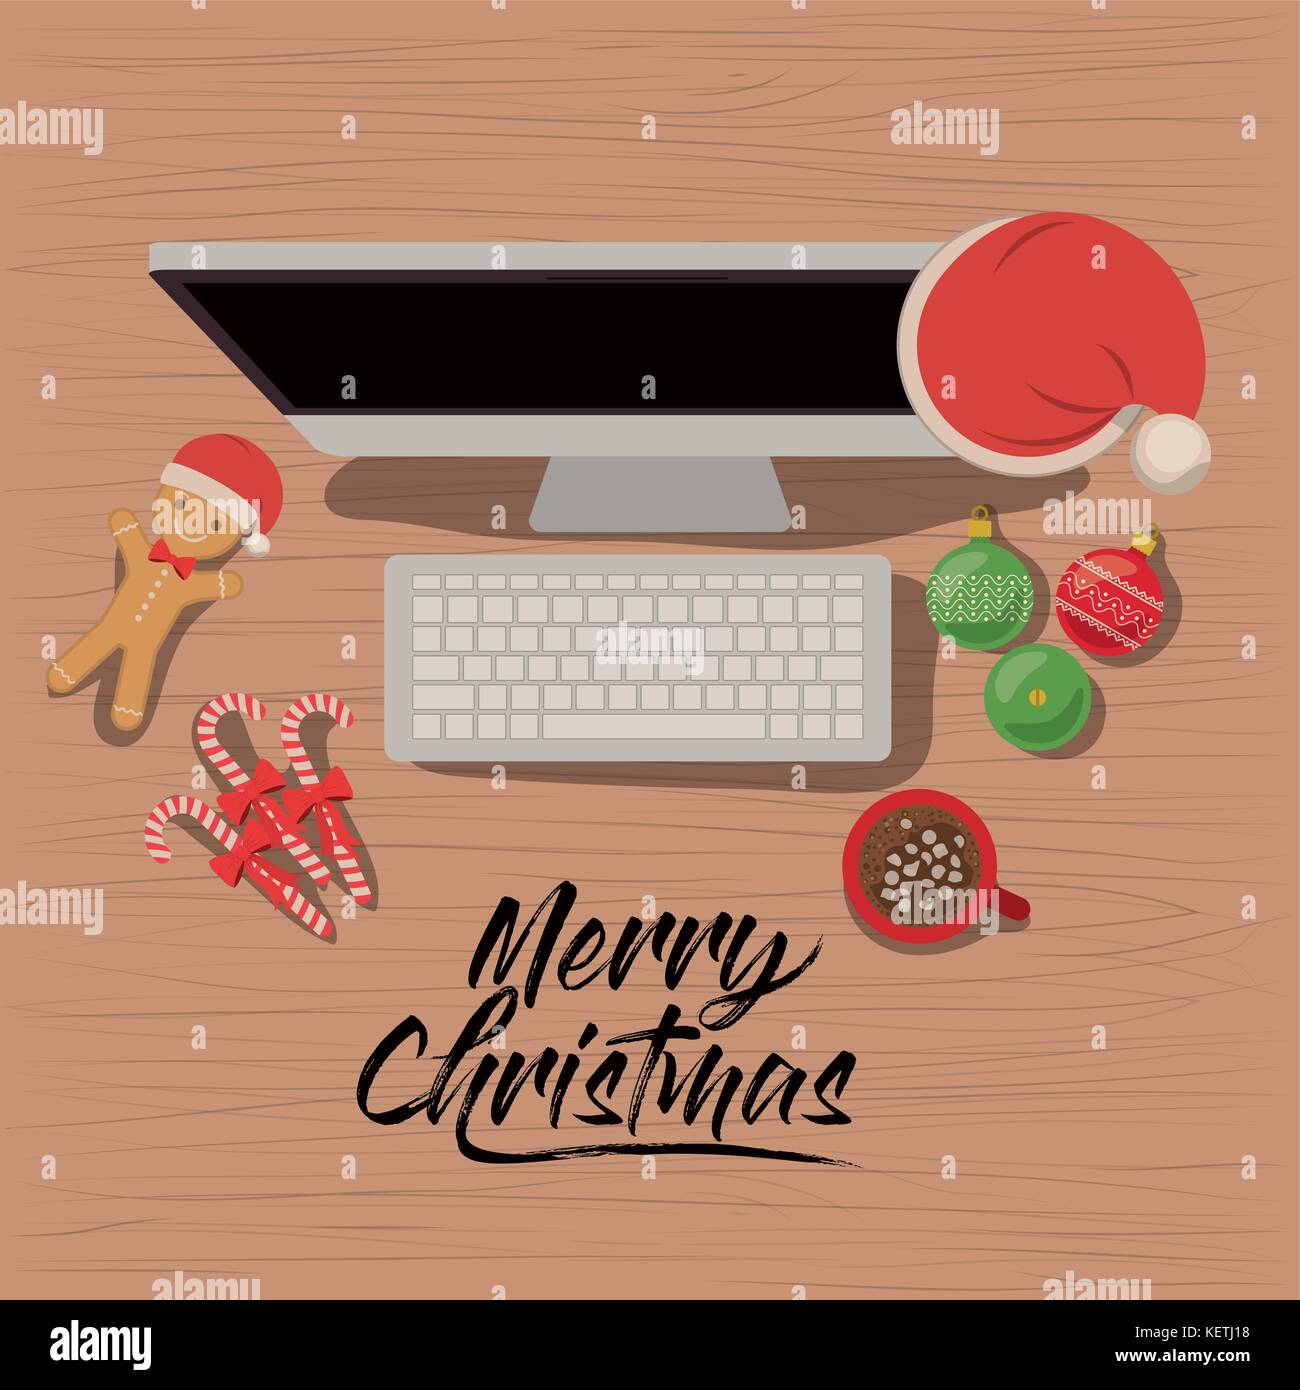 Frohe Weihnachten Poster Mit Desktop Computer Szene In Der Ansicht Von Oben Mit Weihnachten Dekoration Und Sussigkeiten Und Kekse Und Schokolade Schale Stock Vektorgrafik Alamy